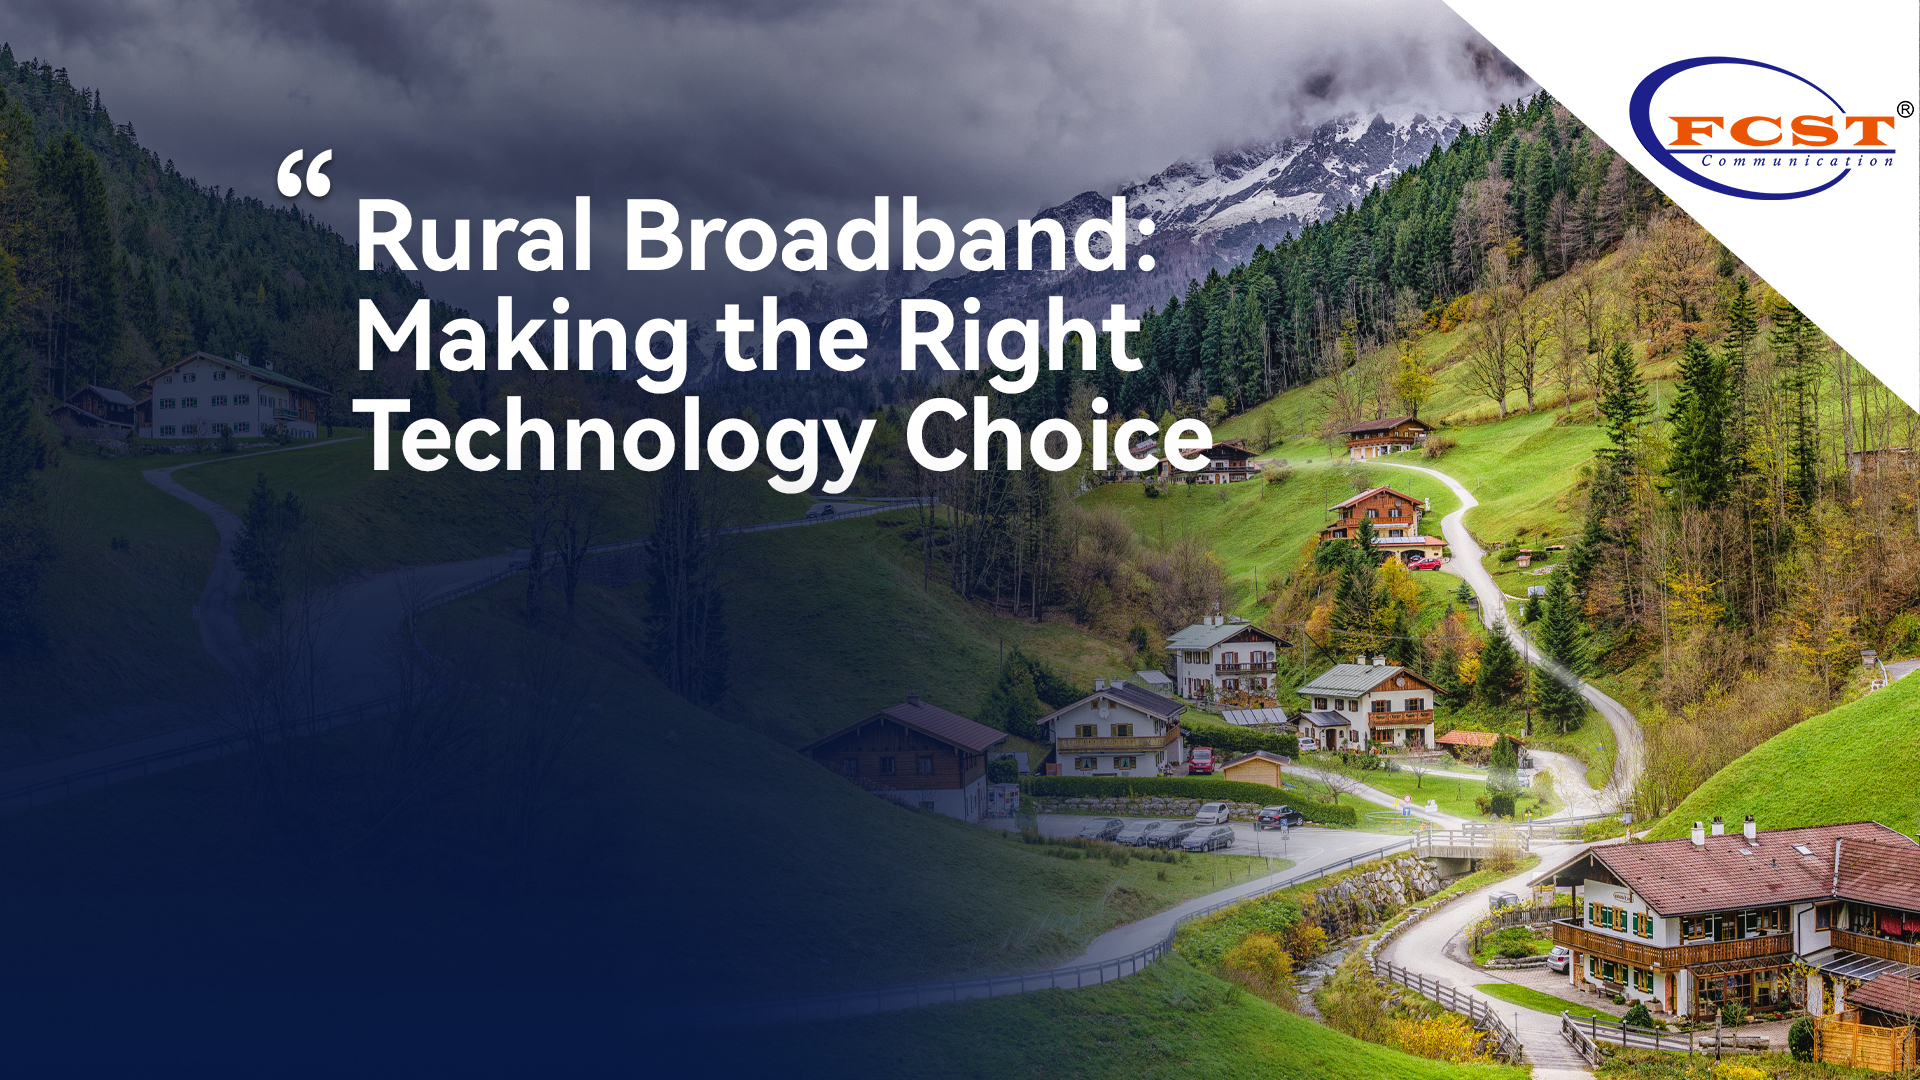 Banda ancha rural: hacer la decisión de tecnología correcta